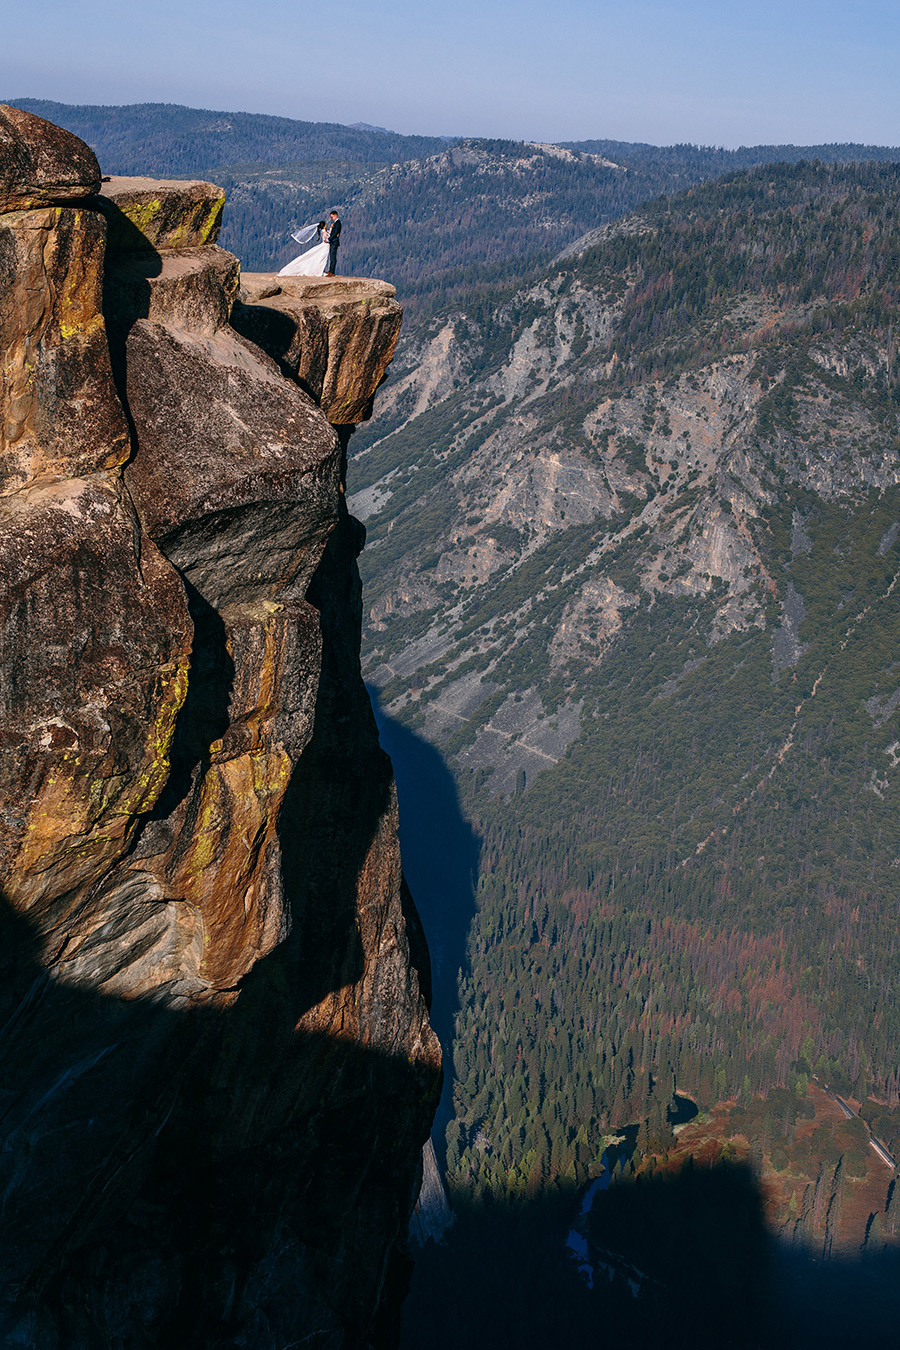 Taft Point overlooking Yosemite Valley